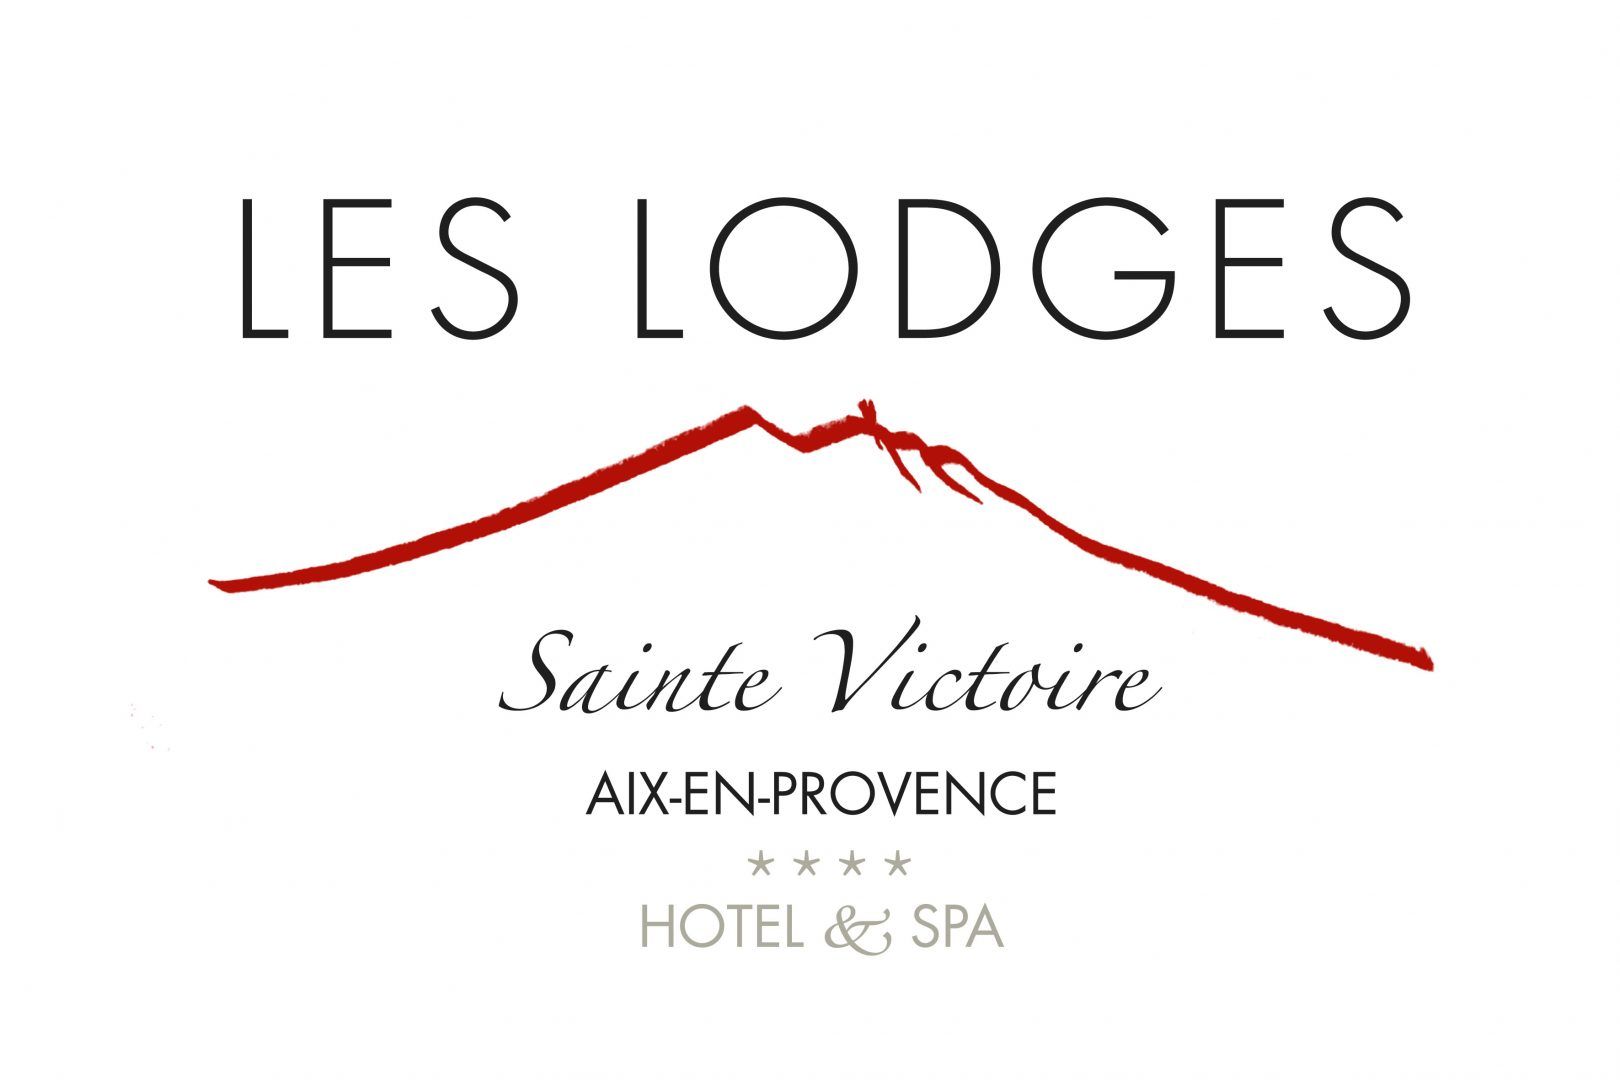 Les Lodges Sainte-Victoire